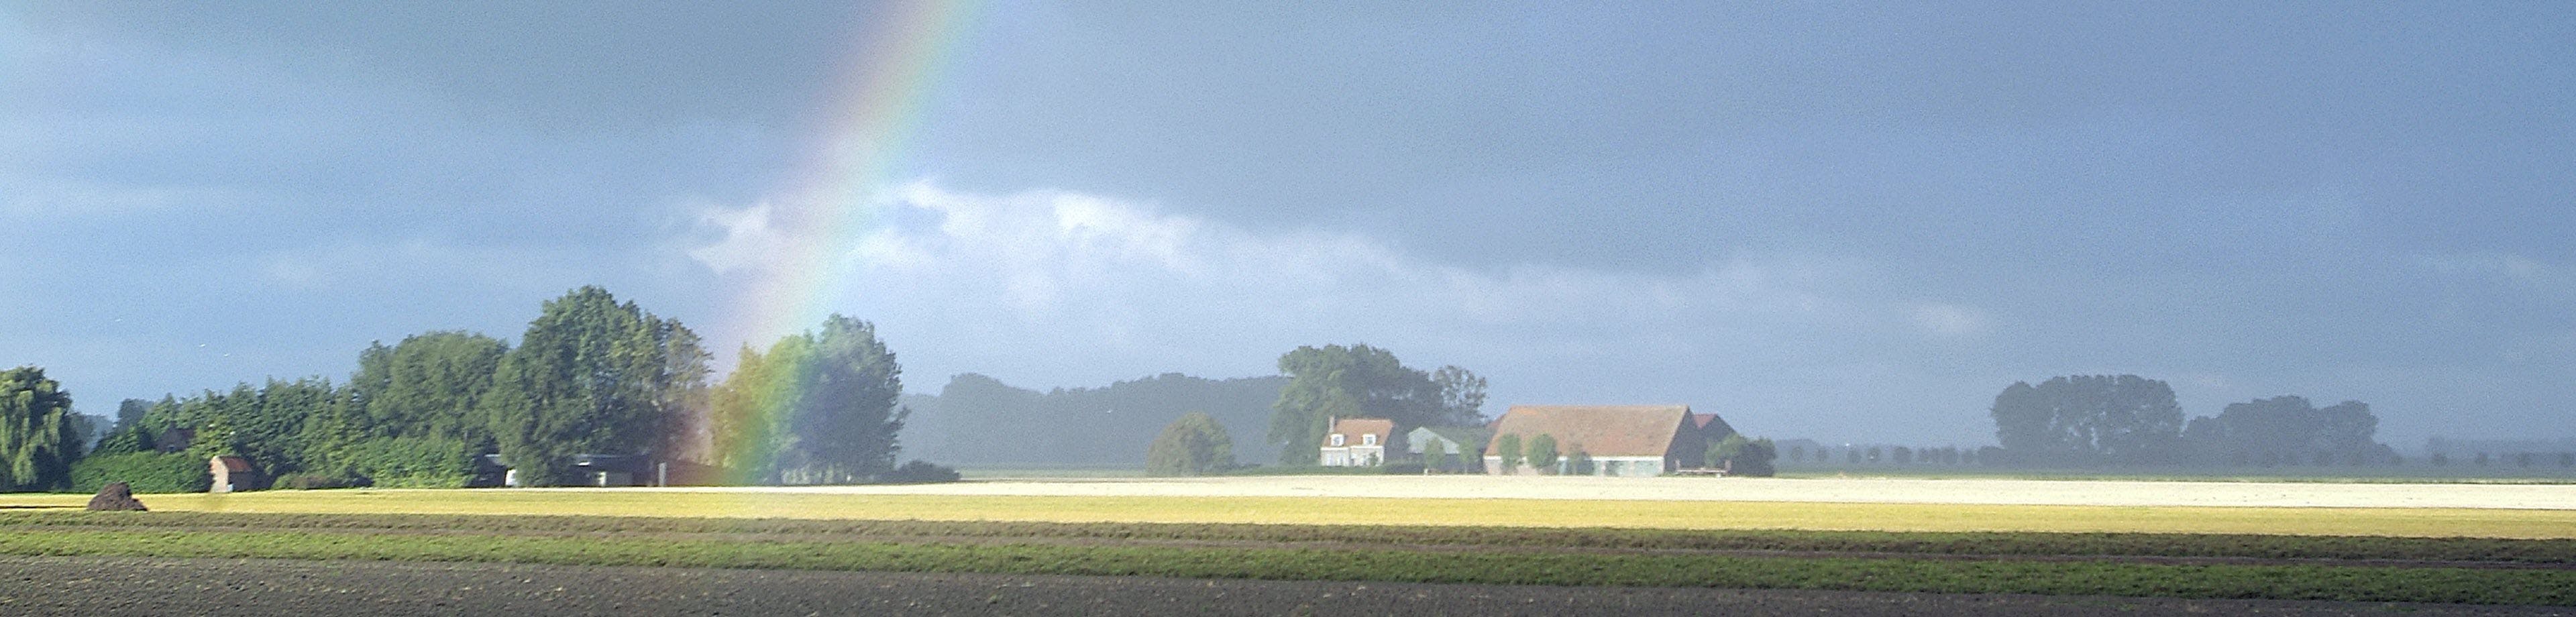 Een boerderij nabij een akker. In de lucht is een regenboog te zien.